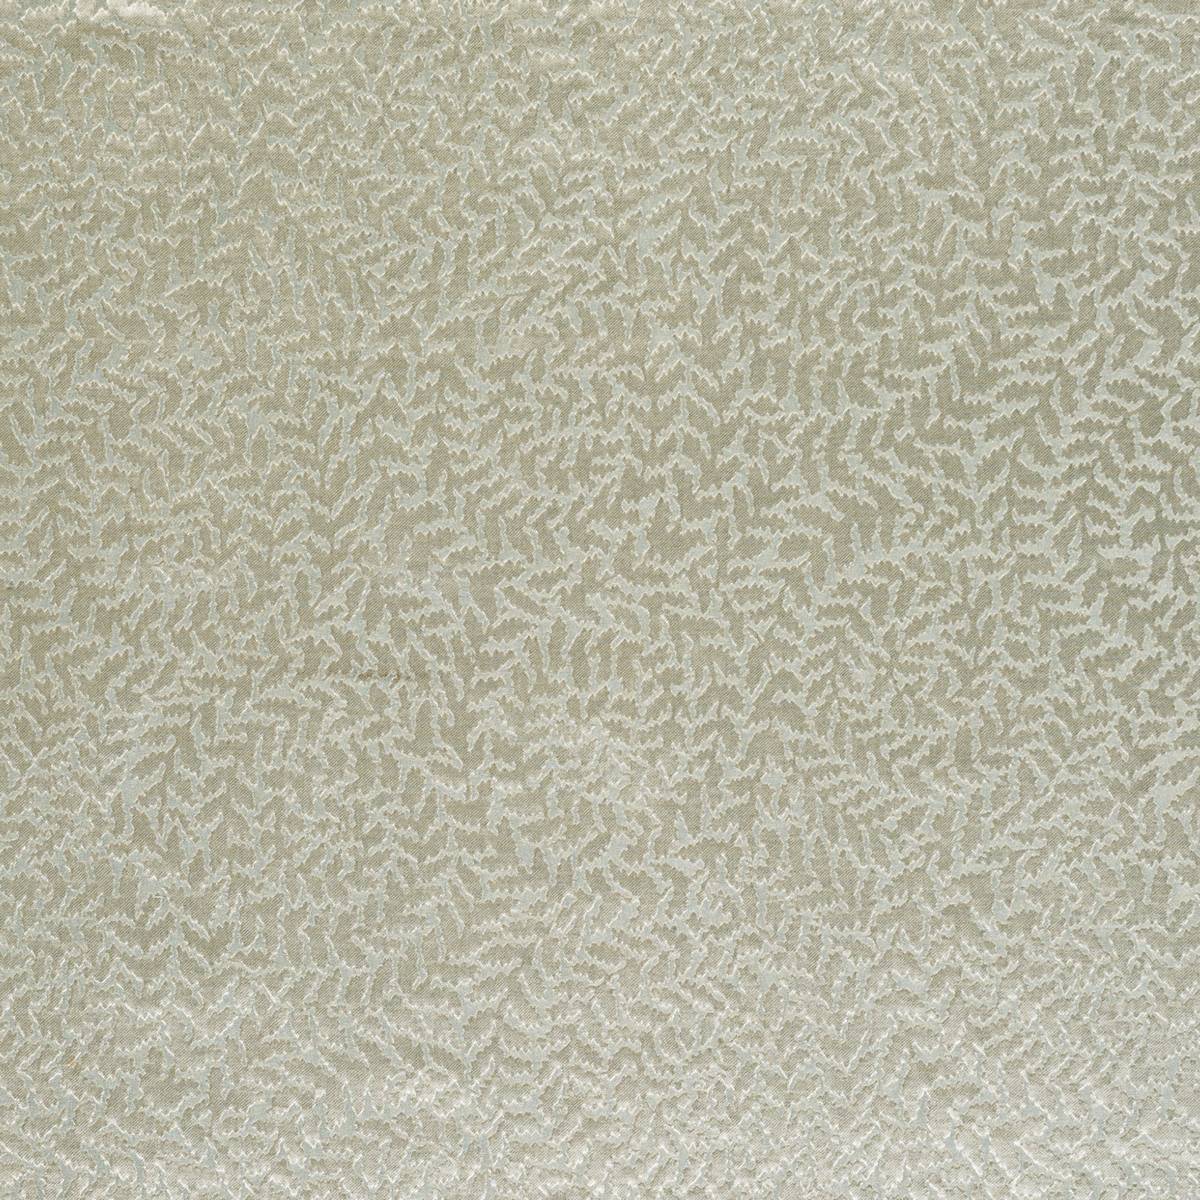 Sinuate Seafoam Fabric by Ashley Wilde